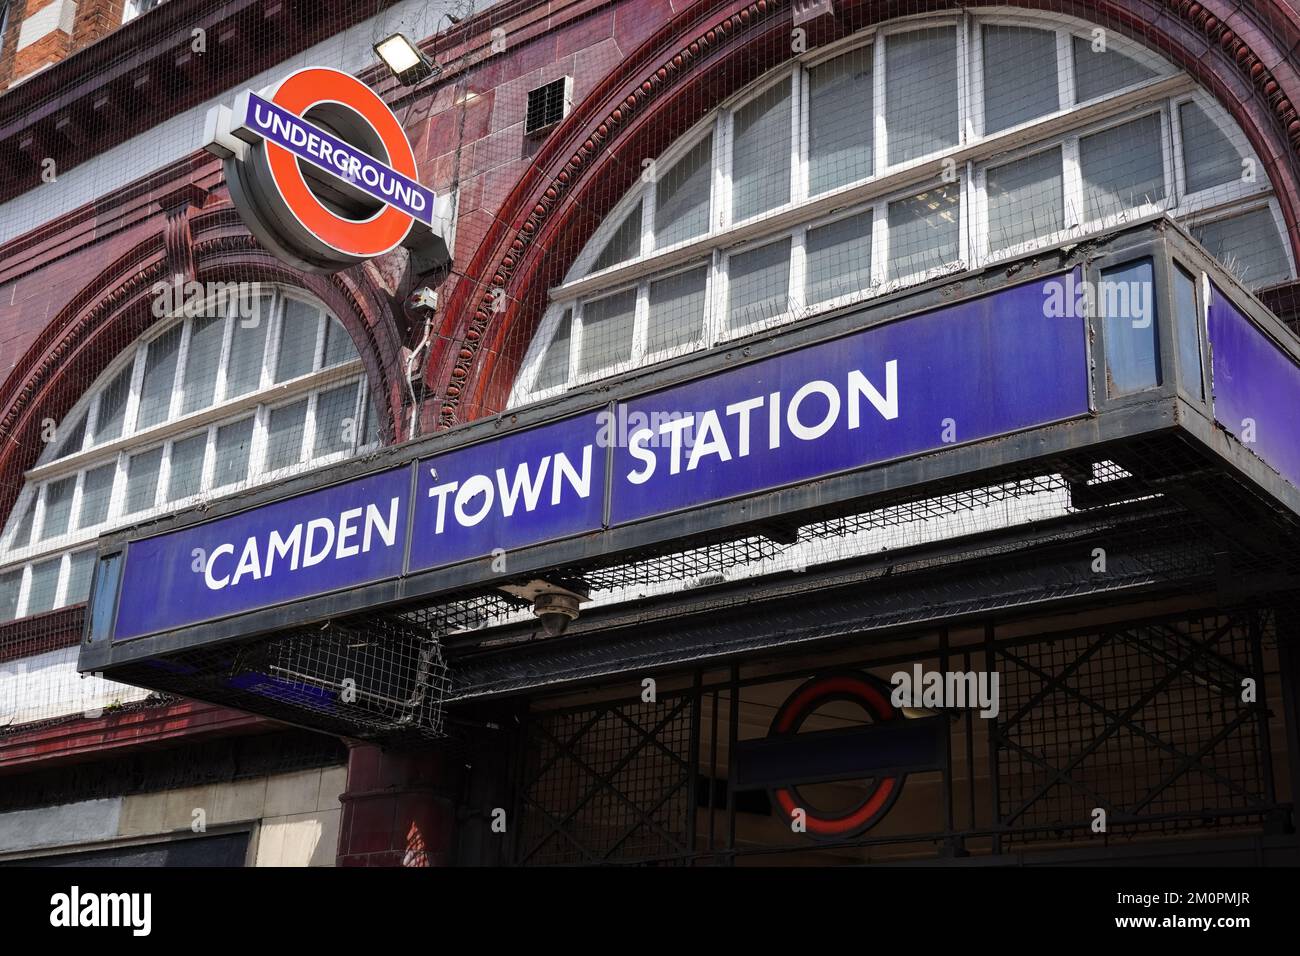 Camden Town métro, station de métro Londres Angleterre Royaume-Uni Banque D'Images